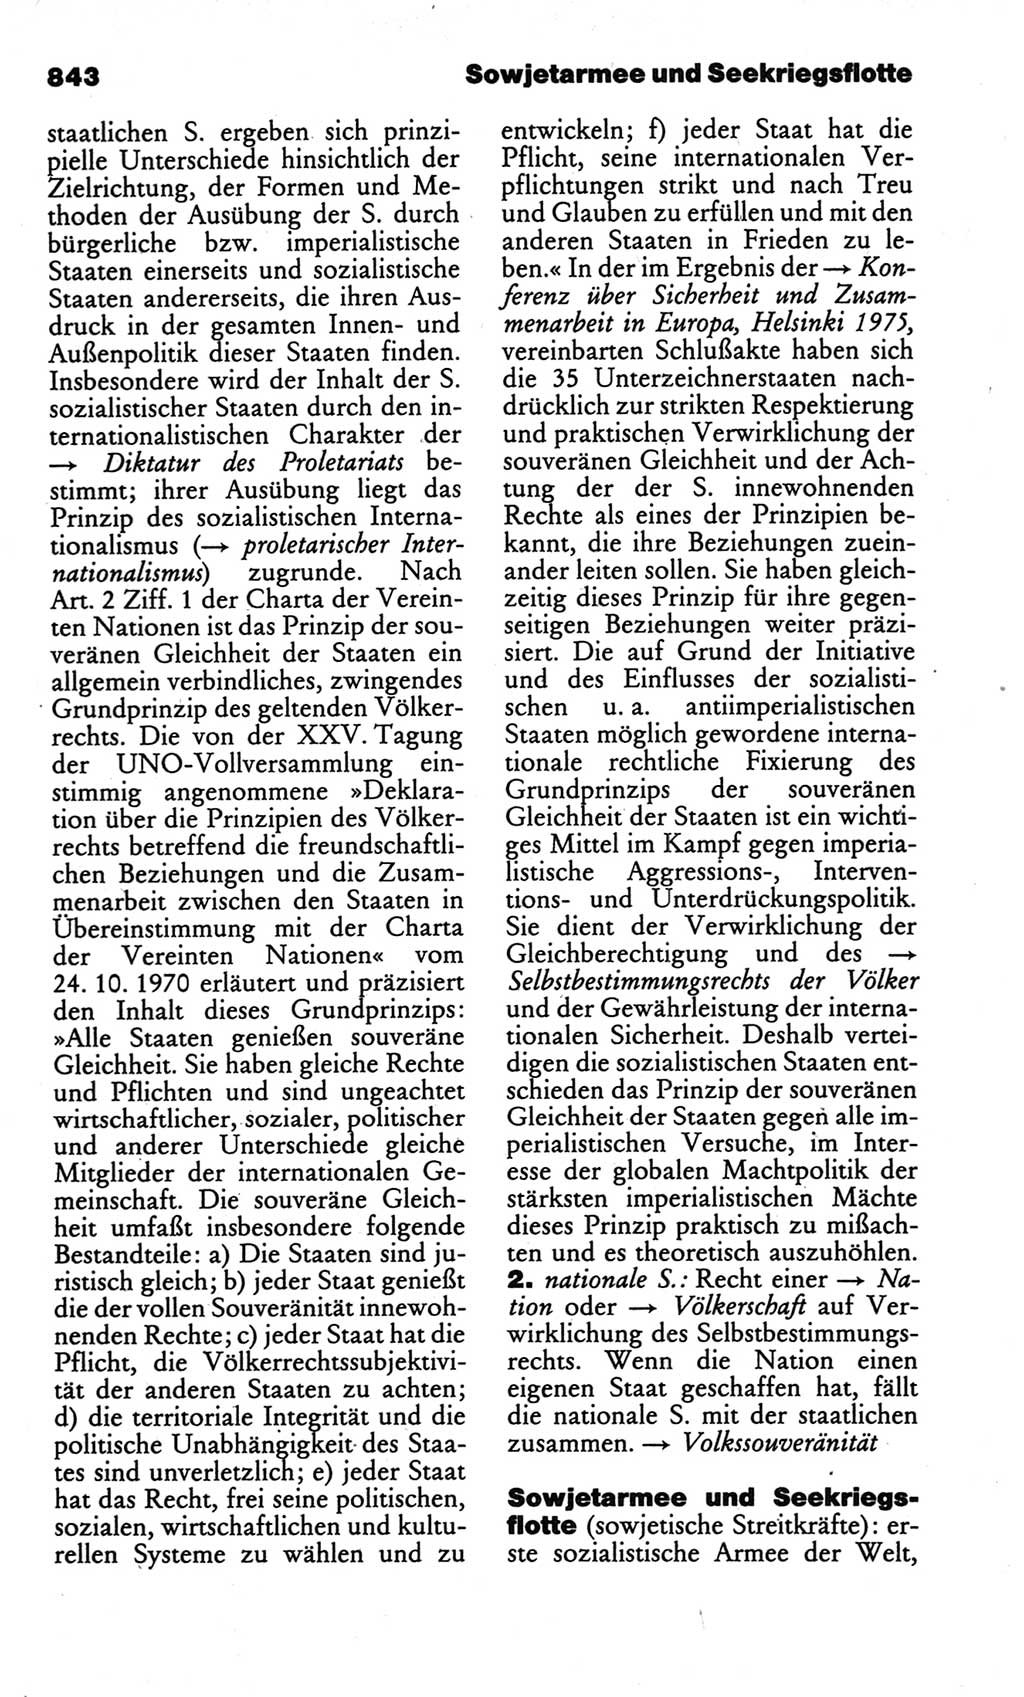 Kleines politisches Wörterbuch [Deutsche Demokratische Republik (DDR)] 1986, Seite 843 (Kl. pol. Wb. DDR 1986, S. 843)